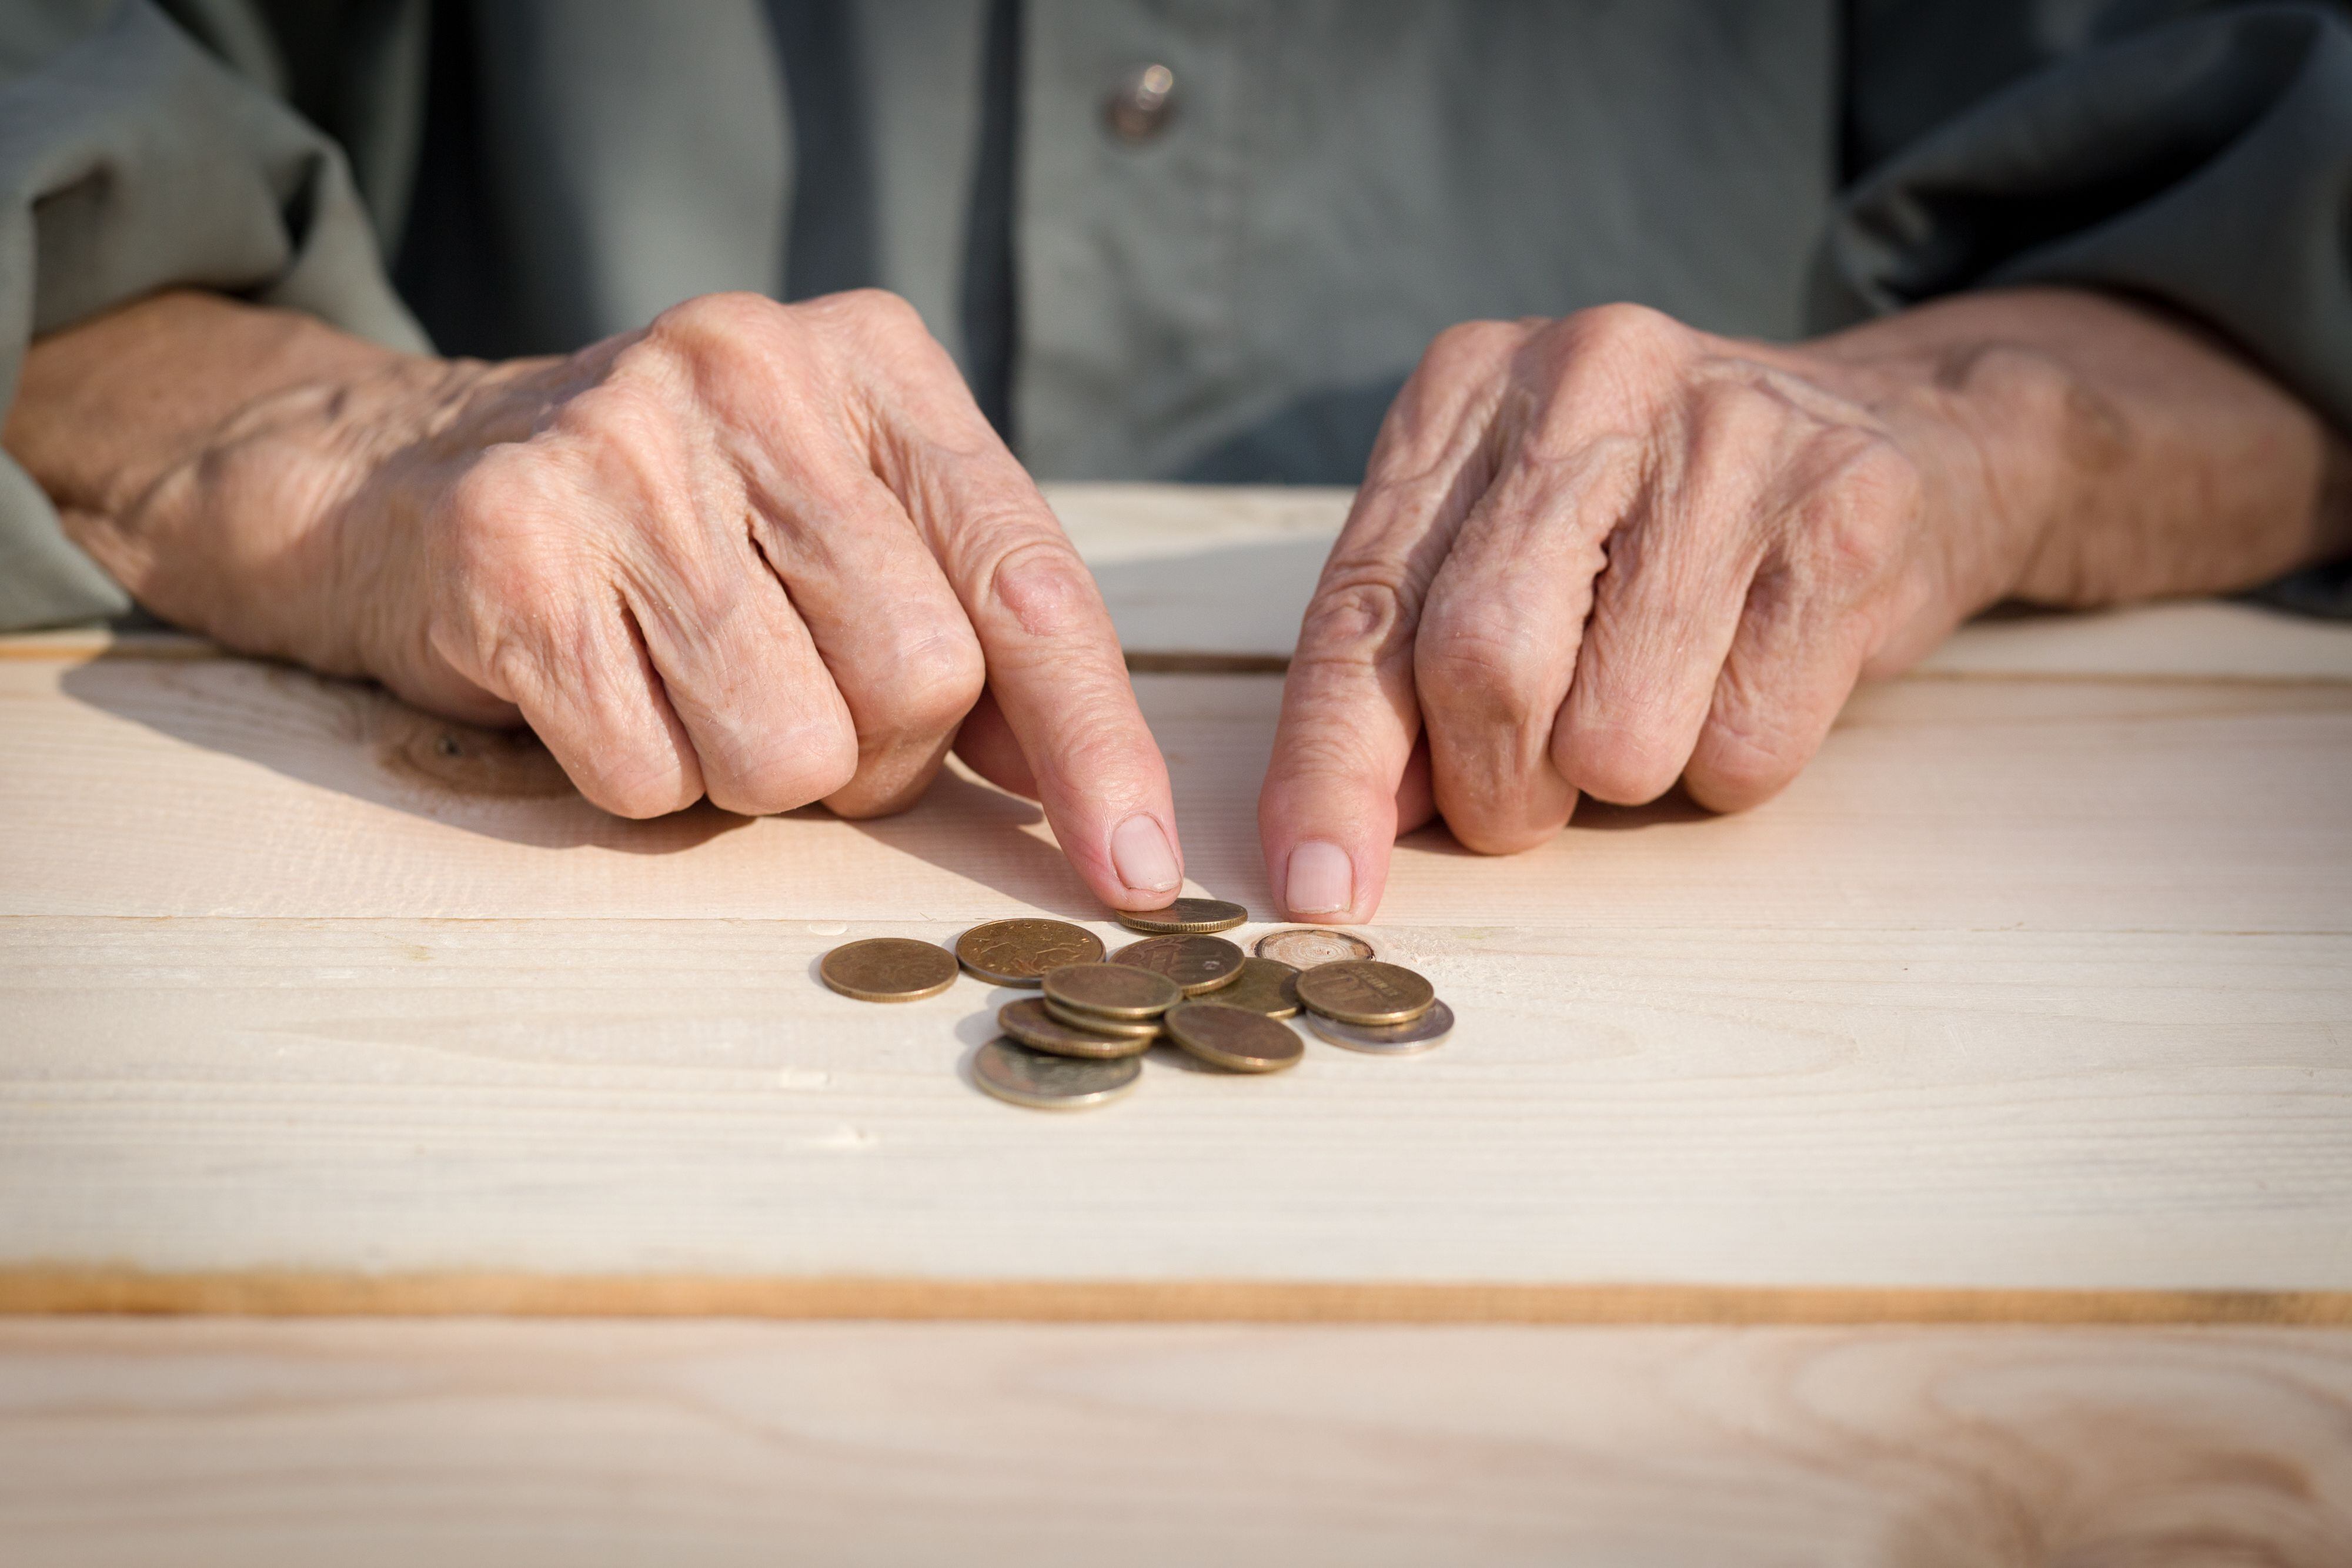 La alta inflación y la menor valoración de las inversiones del ROP afectan los fondos de pensiones en el corto plazo. Sin embargo, las operadoras insisten en que los afiliados deben tomar en cuenta los beneficios en el largo plazo, cuando obtendrán la jubilación.